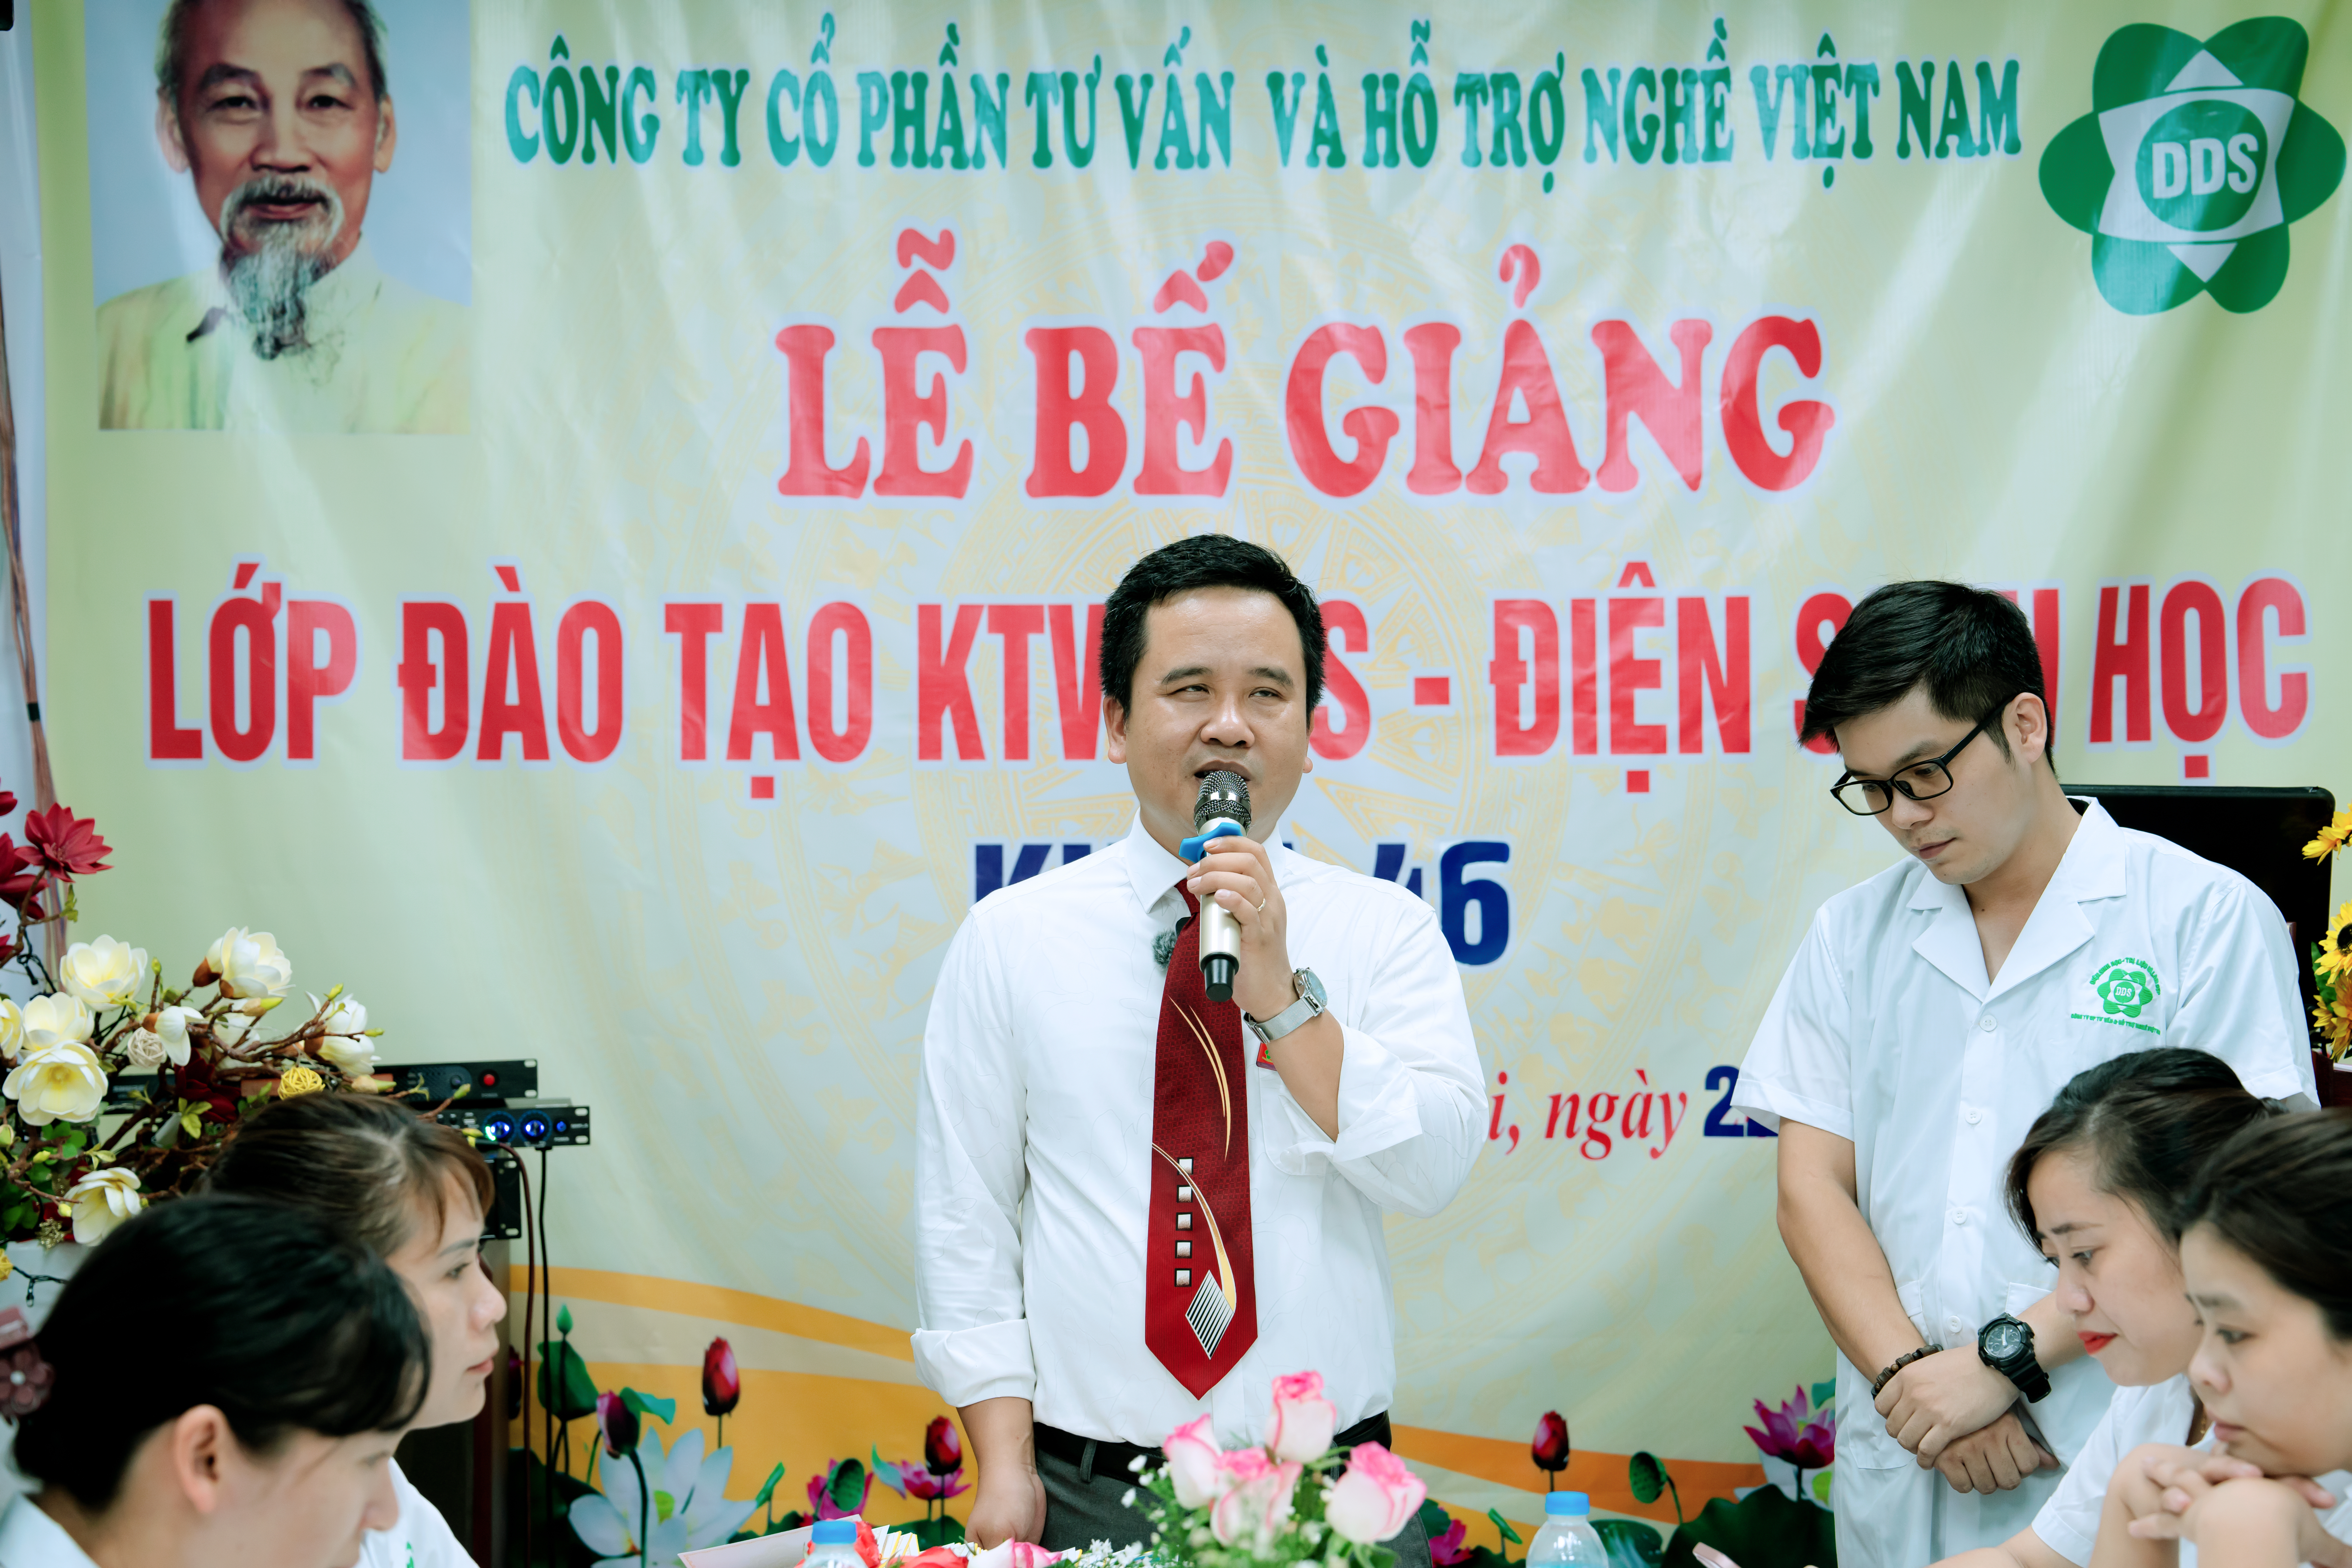 Giám đốc trẻ Nguyễn Thanh Tuấn khởi nghiệm thành công bằng nghề DDS